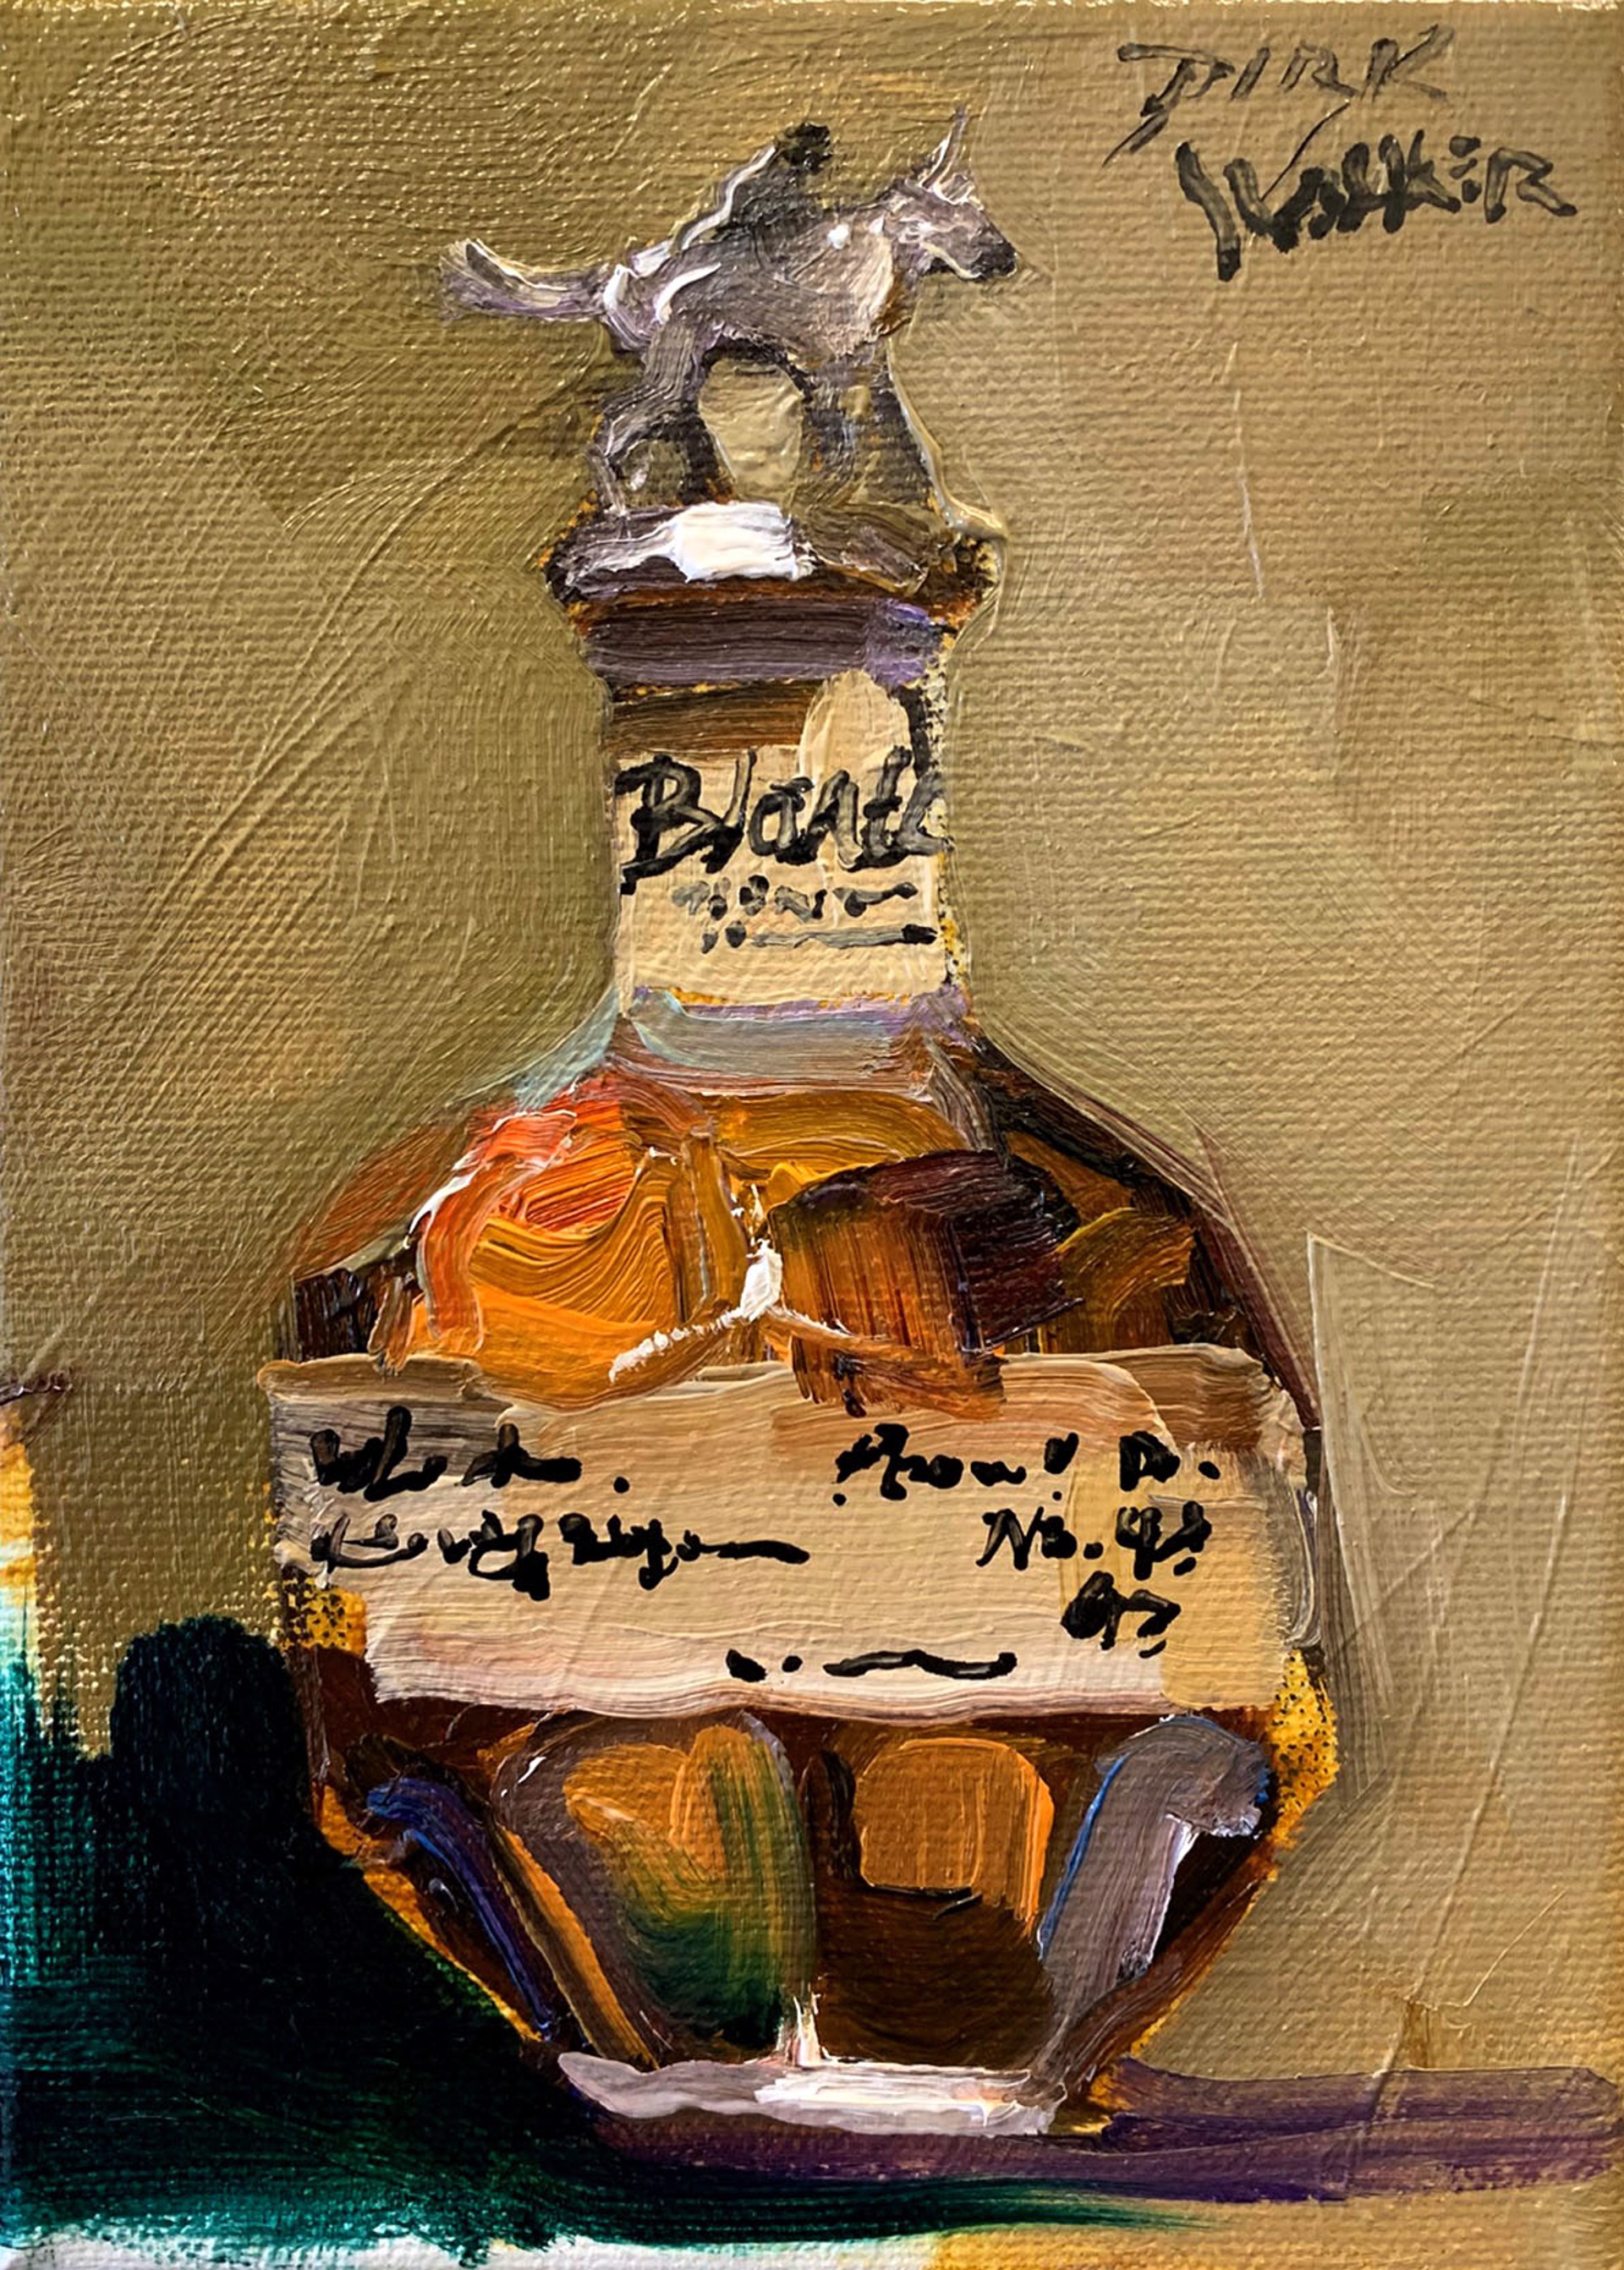 Blanton's Bourbon (commission) by Dirk Walker